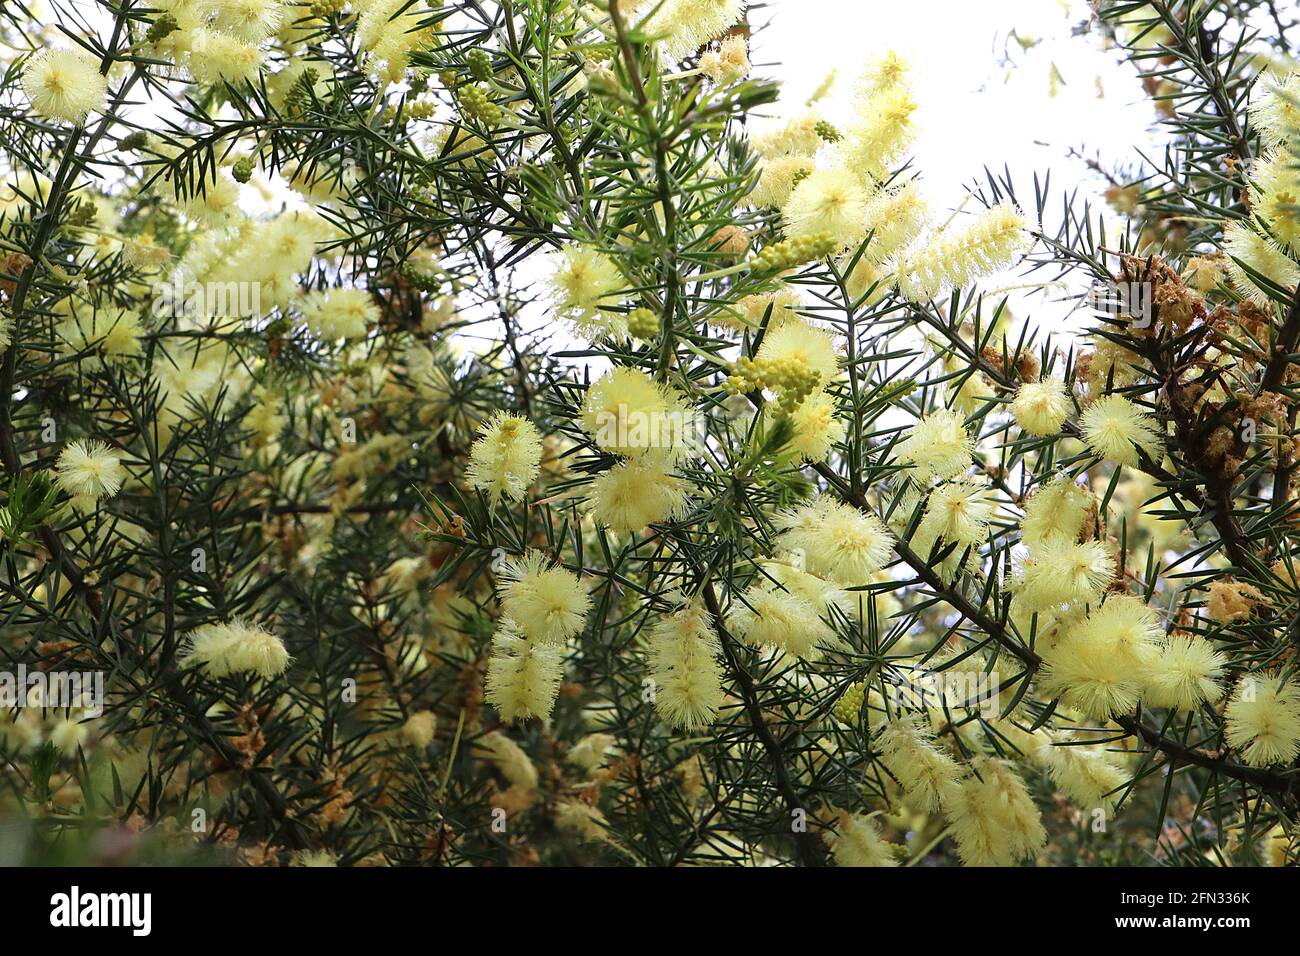 Acacia verticillata Prickly Moses – grappes de fleurs jaune pâle et de feuilles épineuses ressemblant à des aiguilles, May, Angleterre, Royaume-Uni Banque D'Images